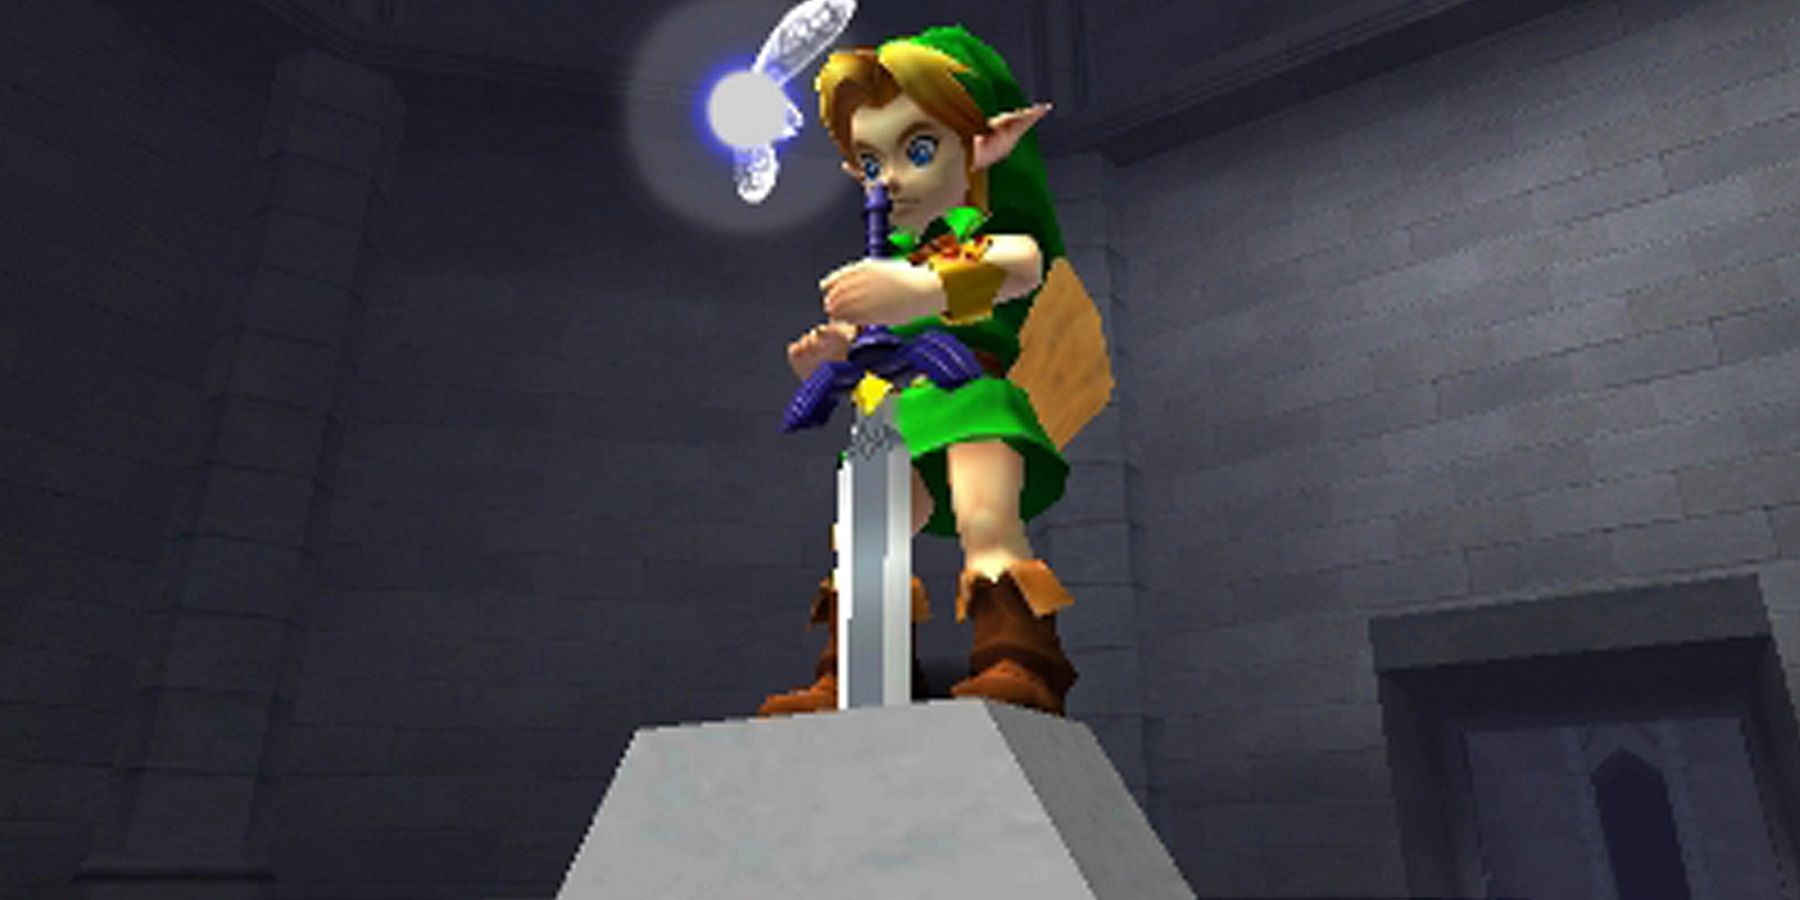 Изображение из The Legend of Zelda: Ocarina of Time, на котором Линк выпускает Мастер-меч.